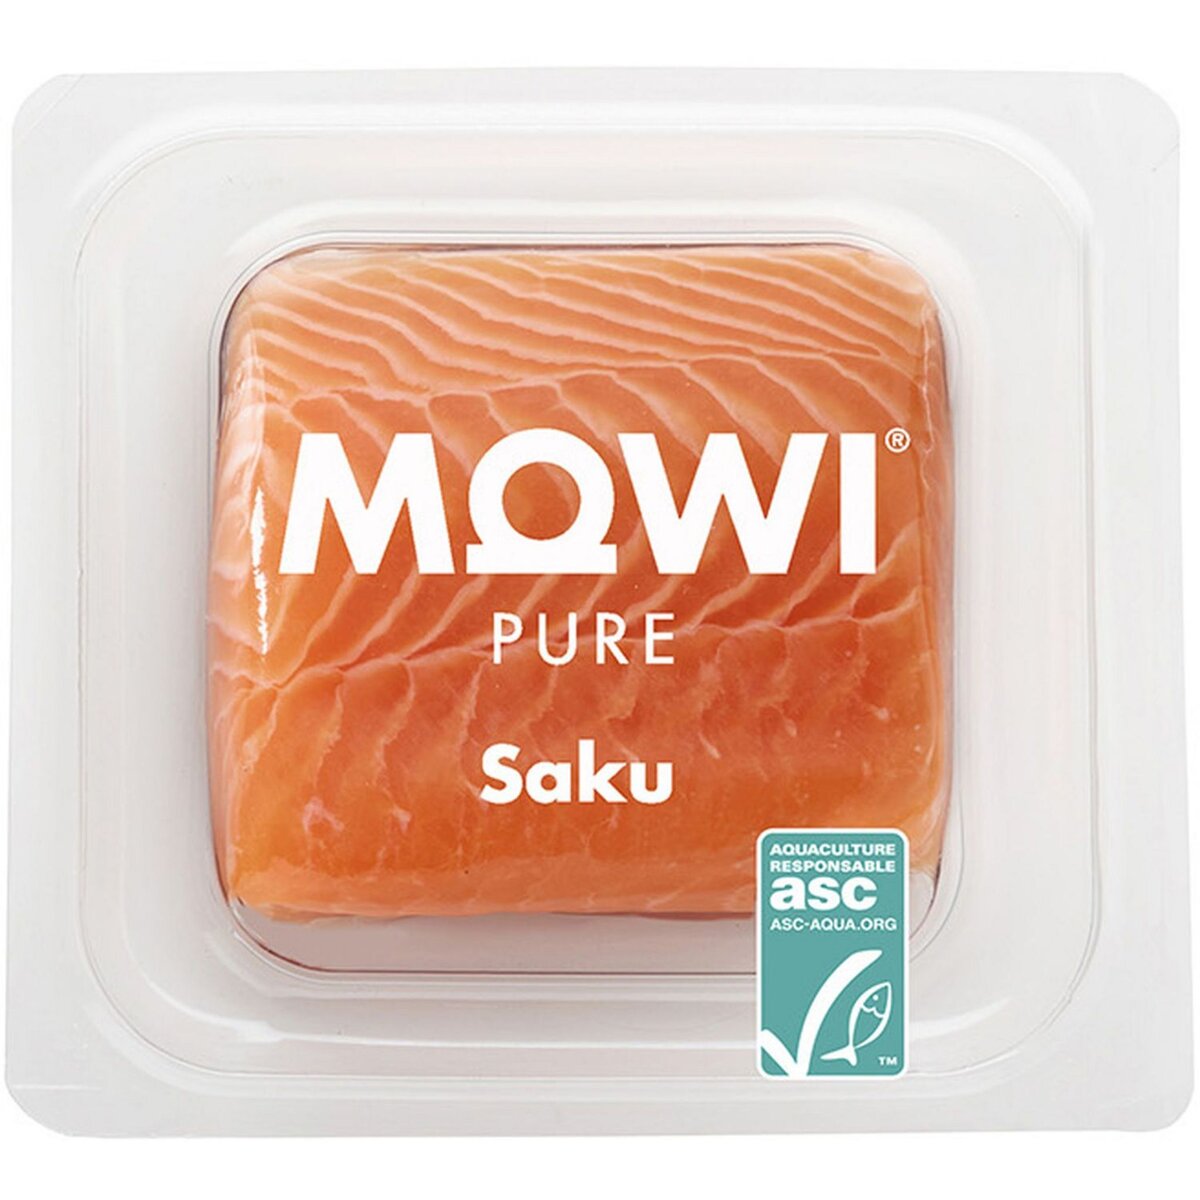 Mowi Saku Découpe de saumon avec peau 140g 1 portion 140g